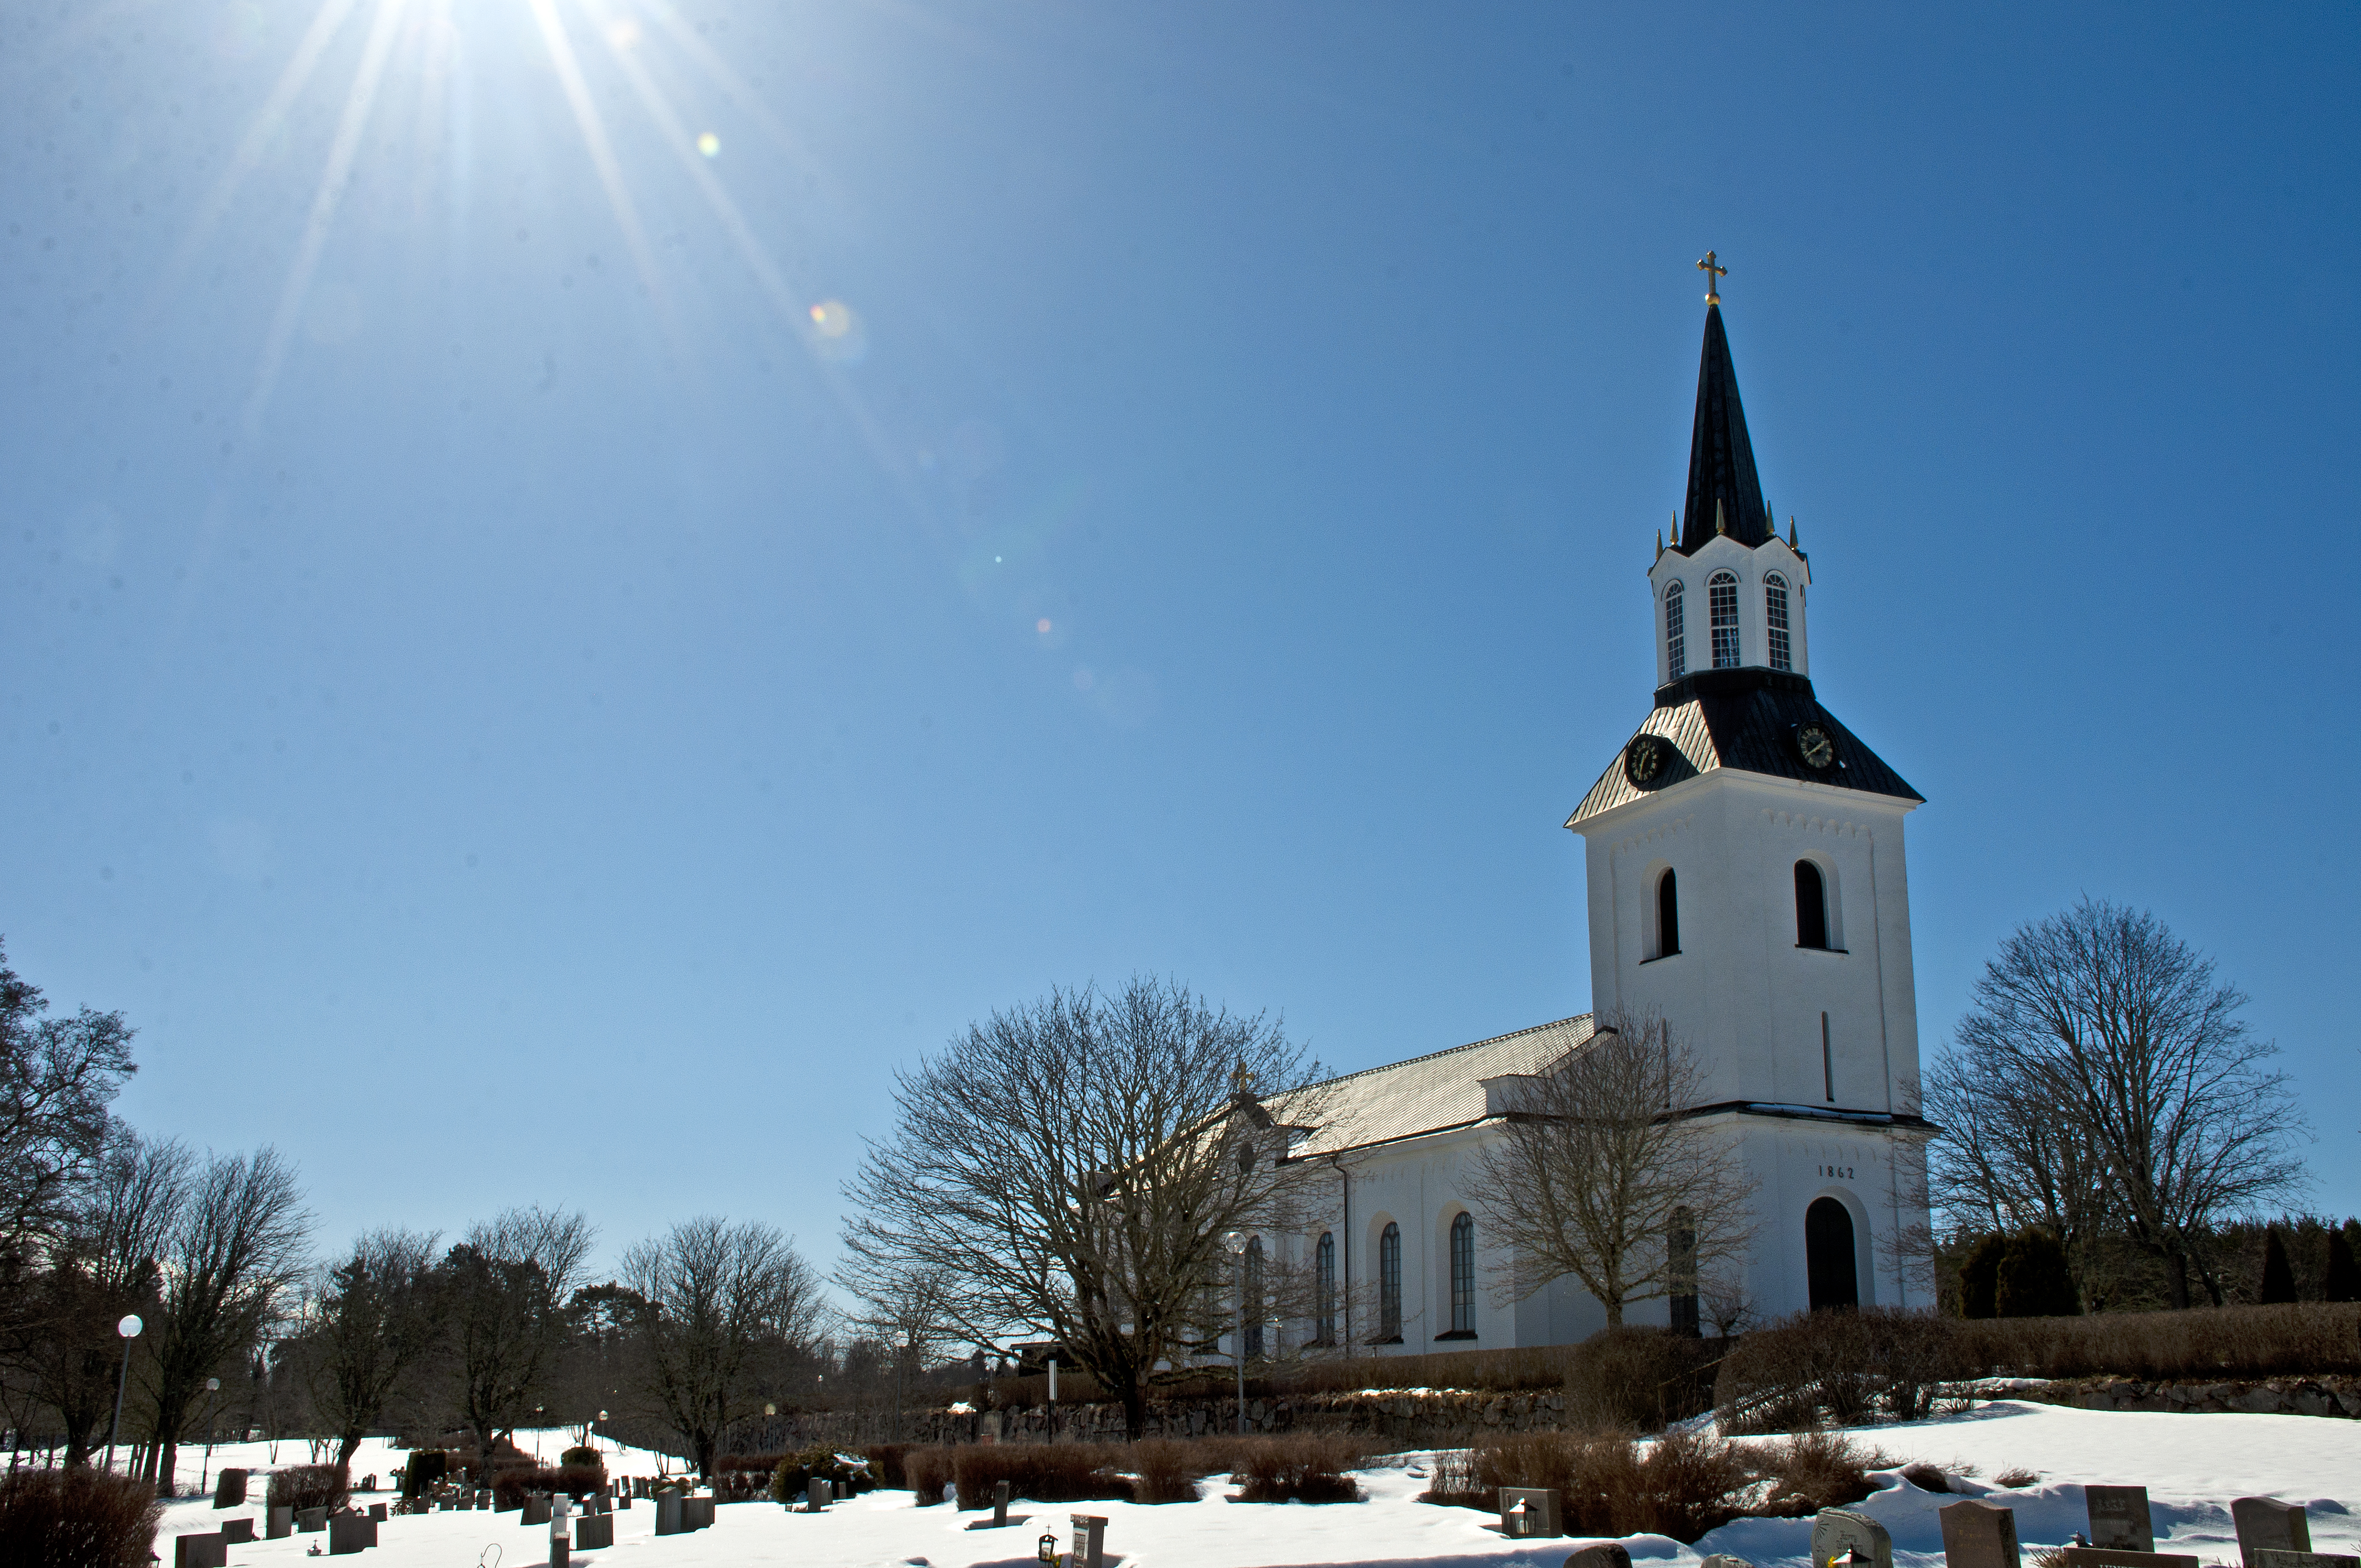 Västlands kyrka i uppland photo